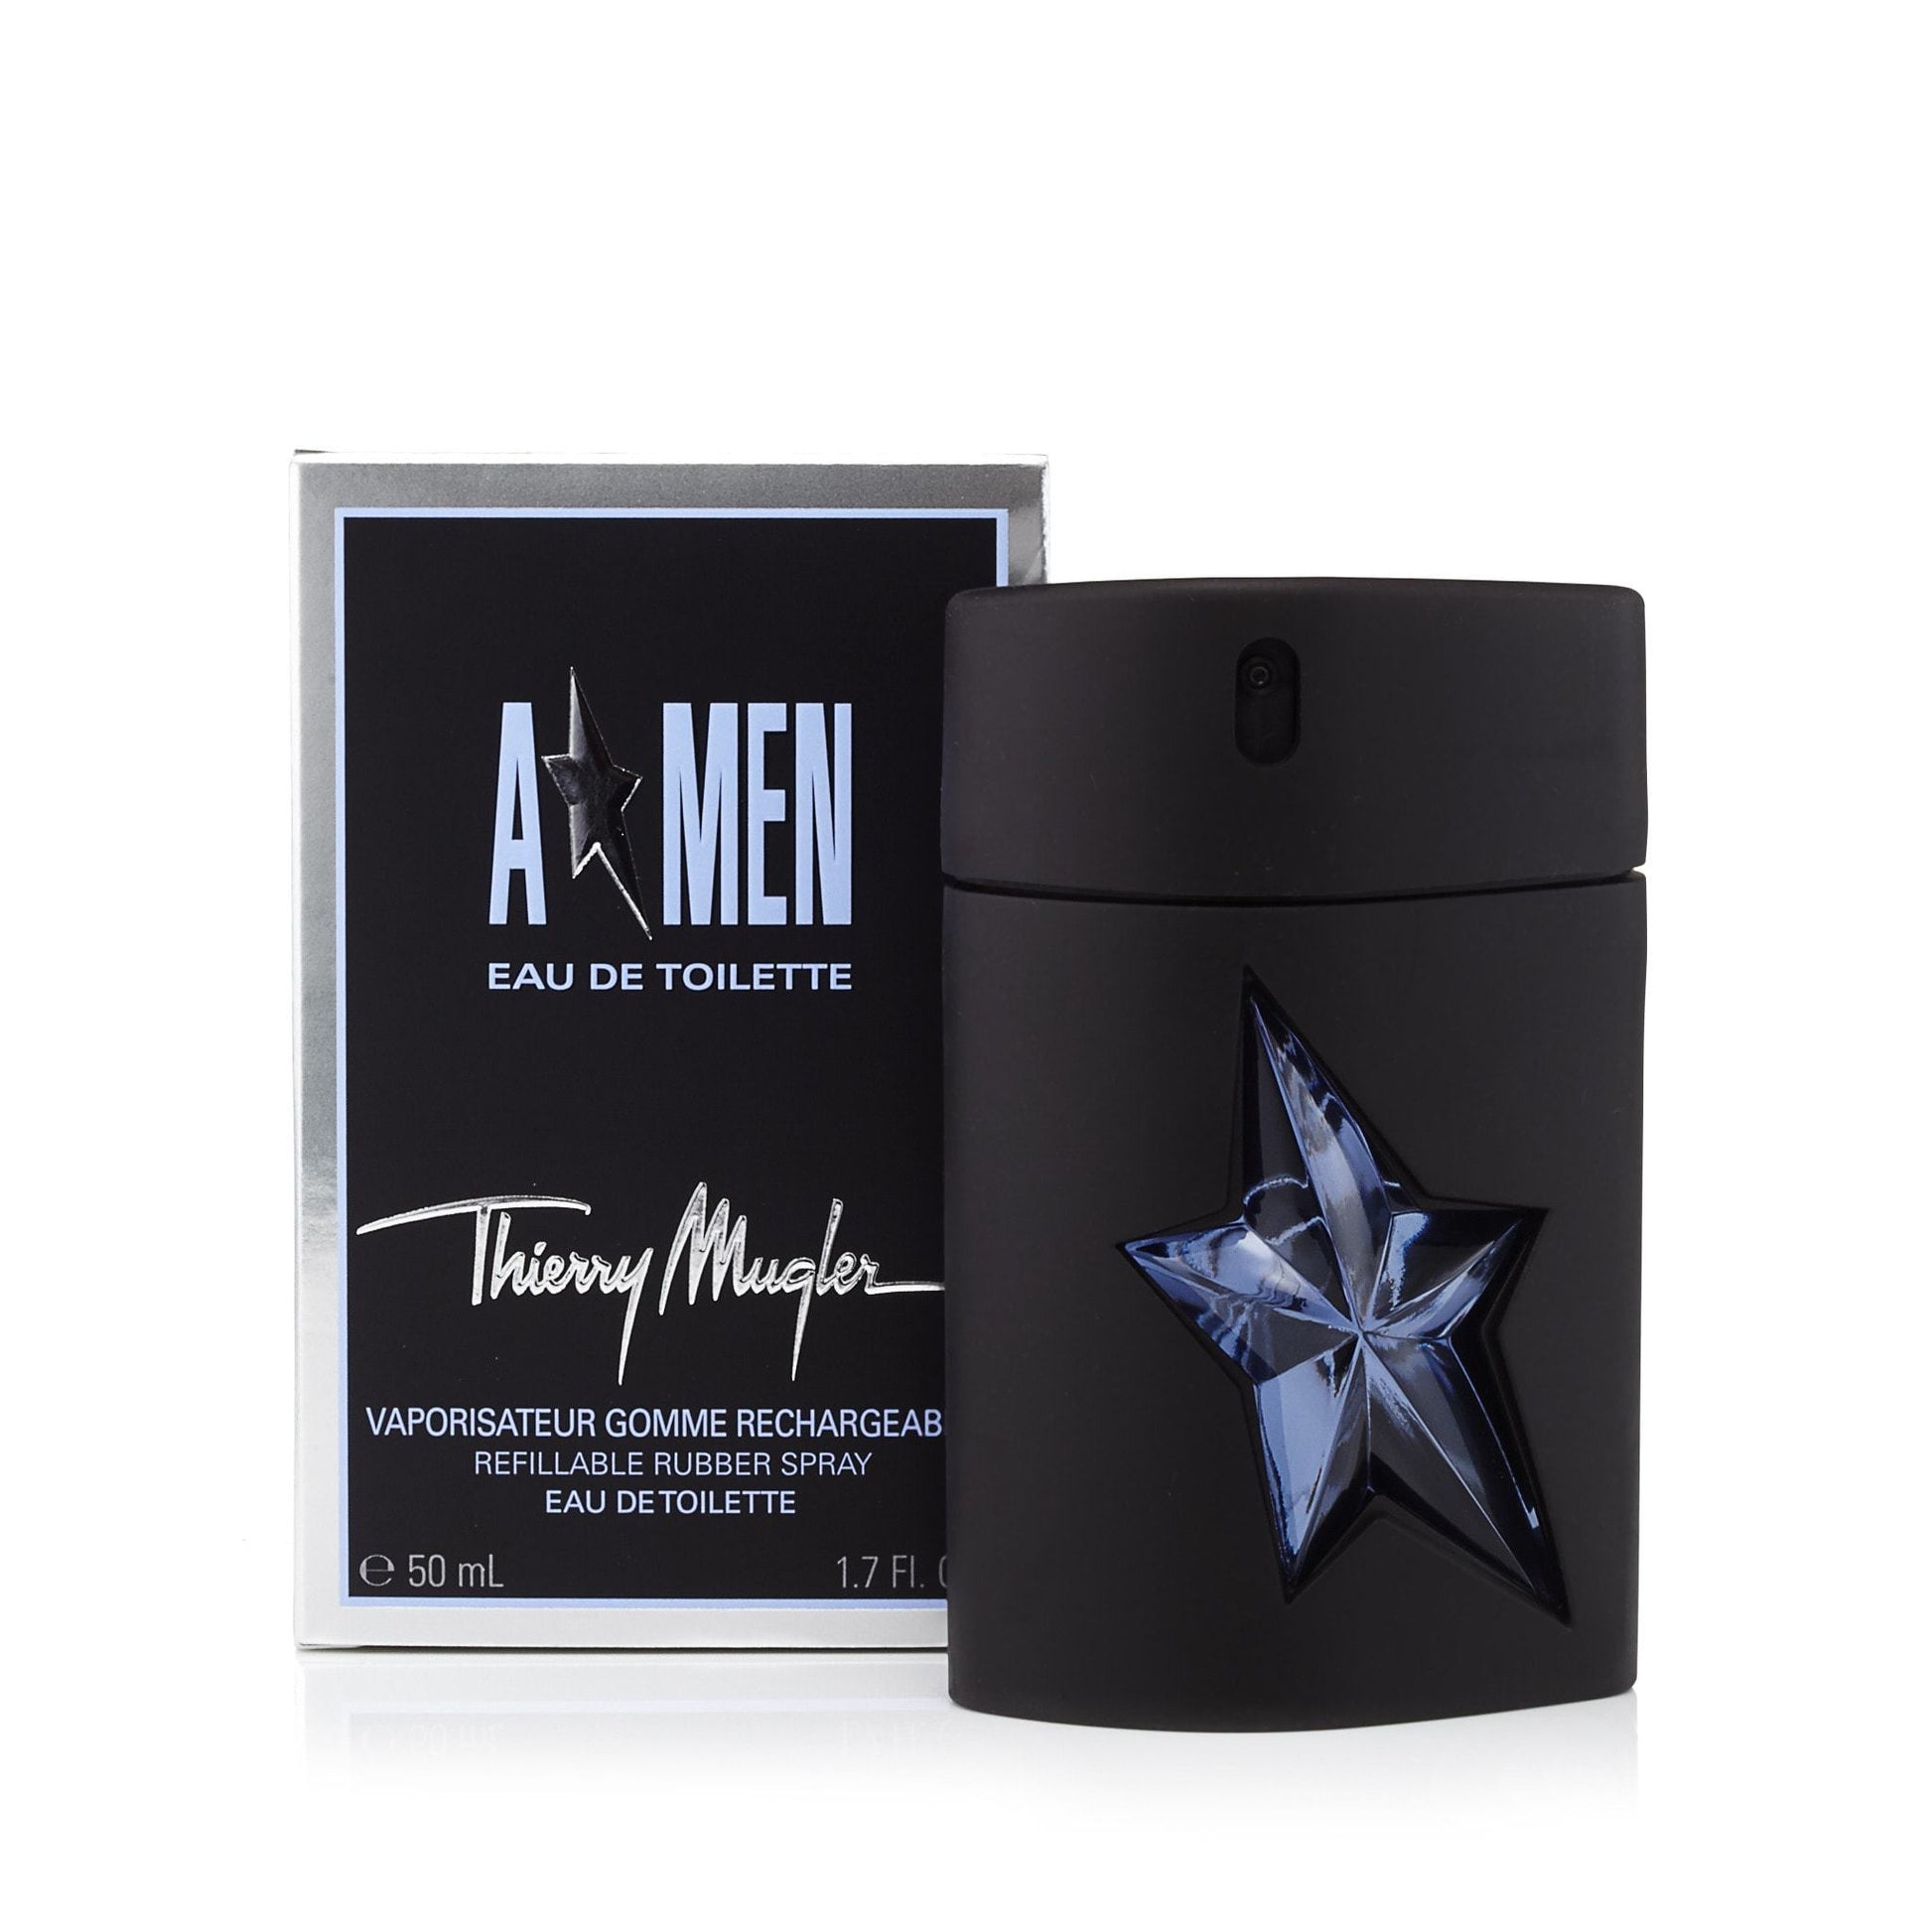 A*Men Eau de Toilette Spray for Men by Thierry Mugler, Product image 3